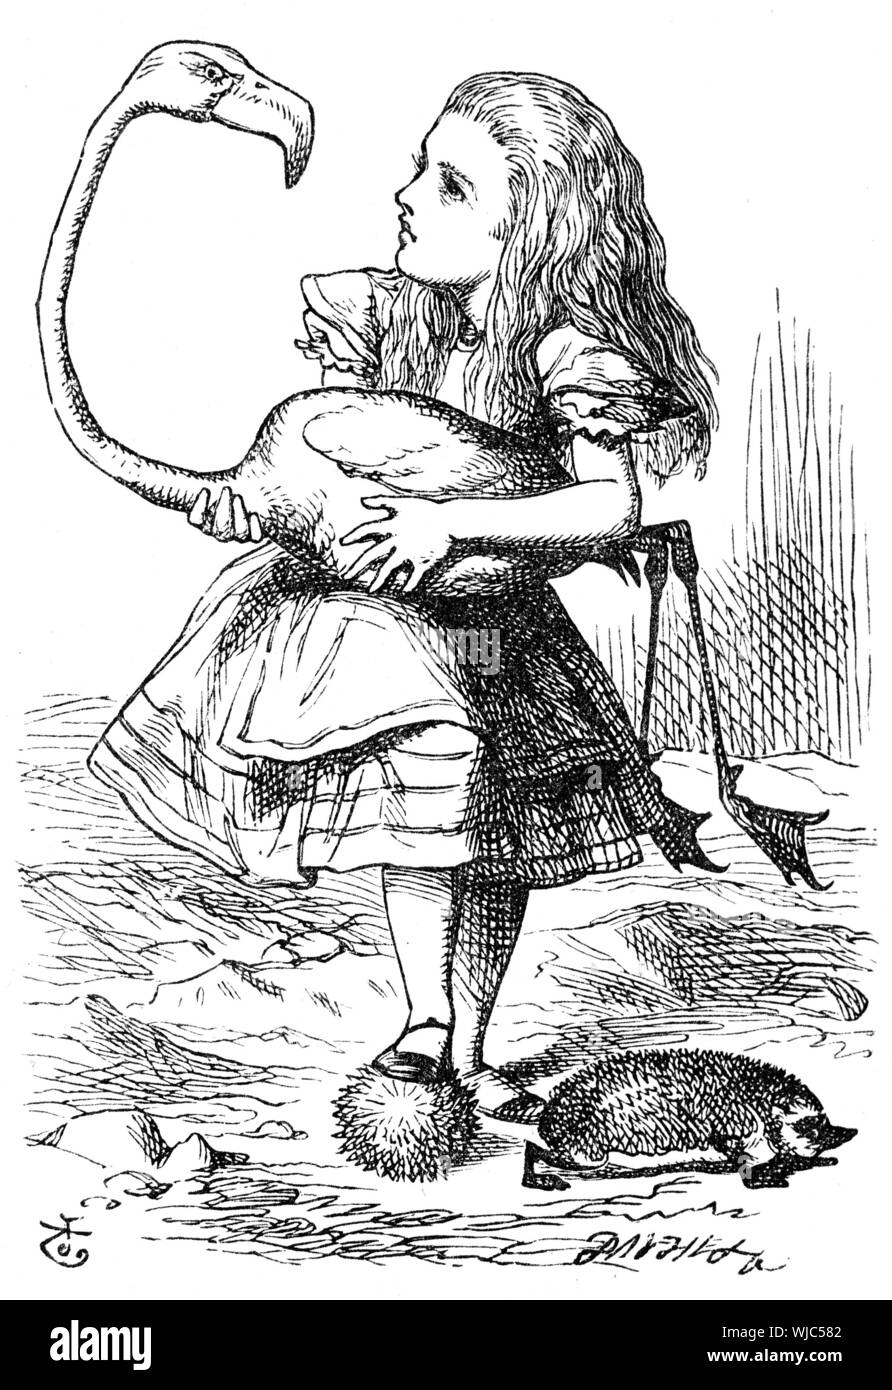 ALICE'S Adventures in Wonderland John Tenniel's 1865 ilustración de Alice jugar croquet con flamingo Foto de stock